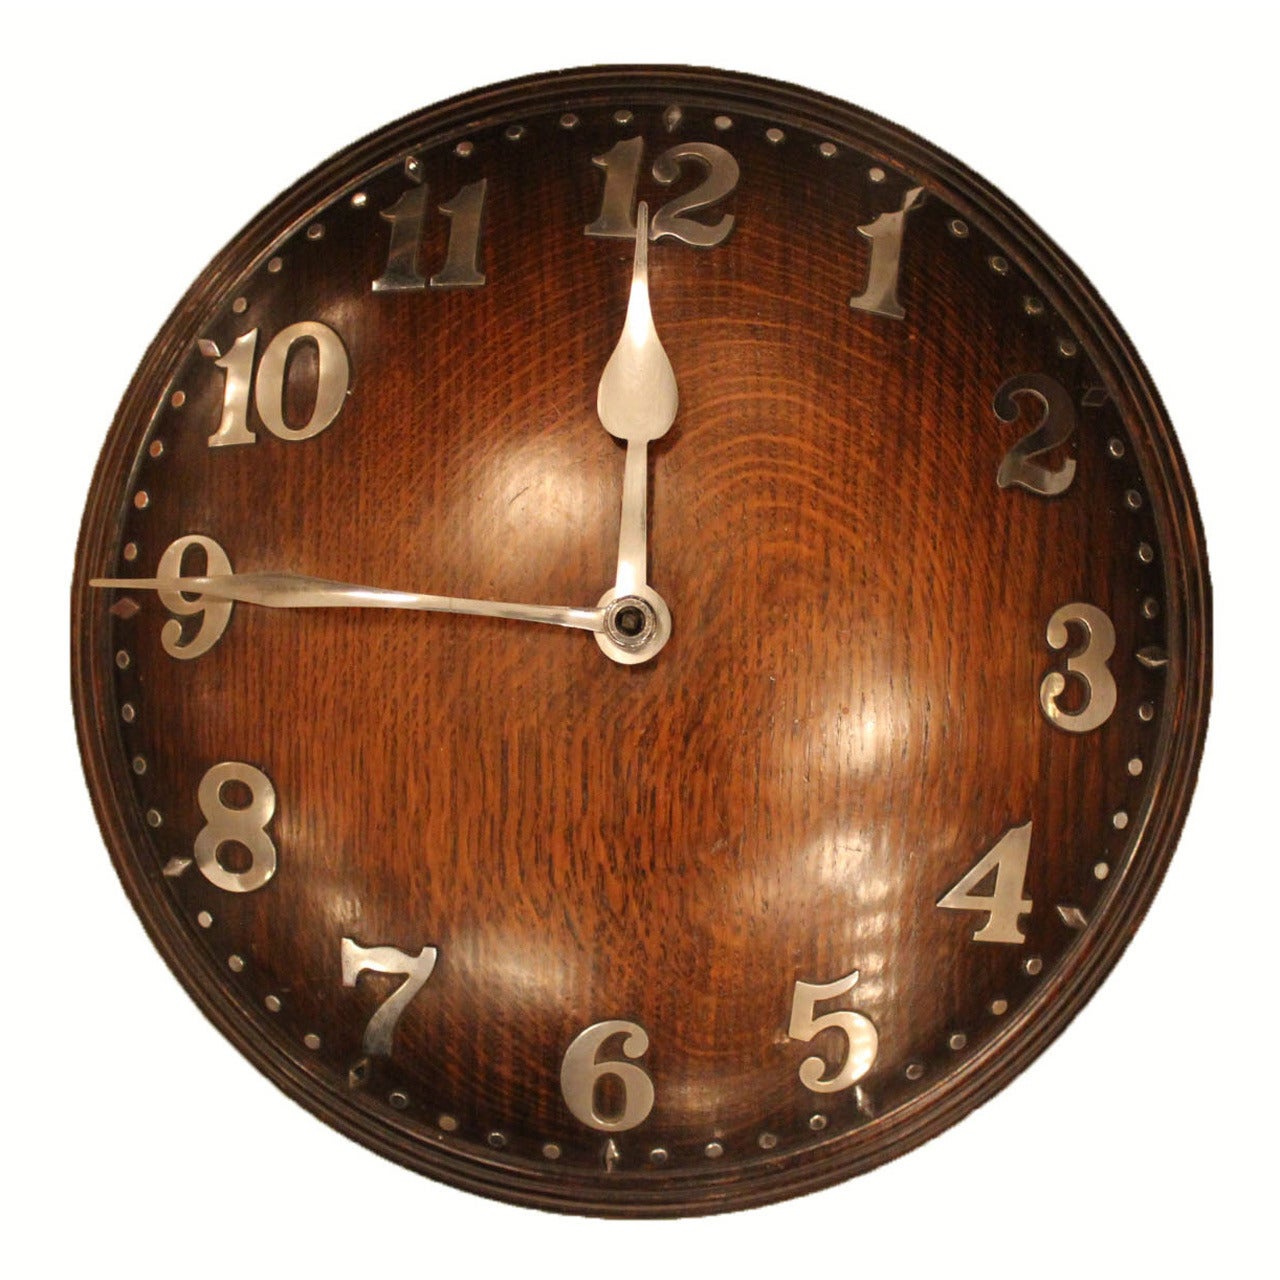 Heal's Wall Clock of Oak and Chrome